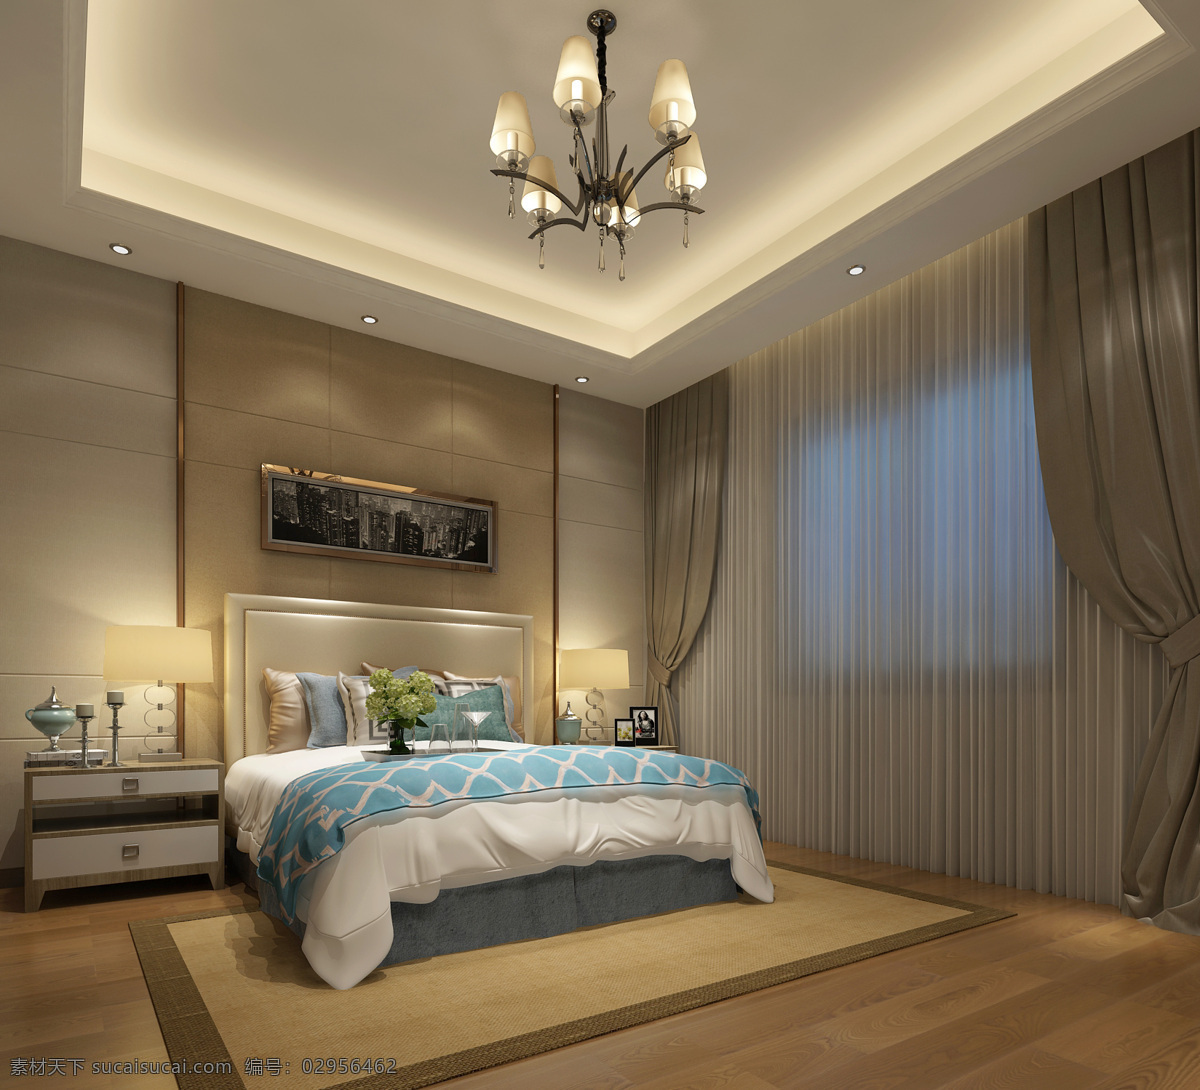 次卧室 卧室 装修 效果图 立体 环境设计